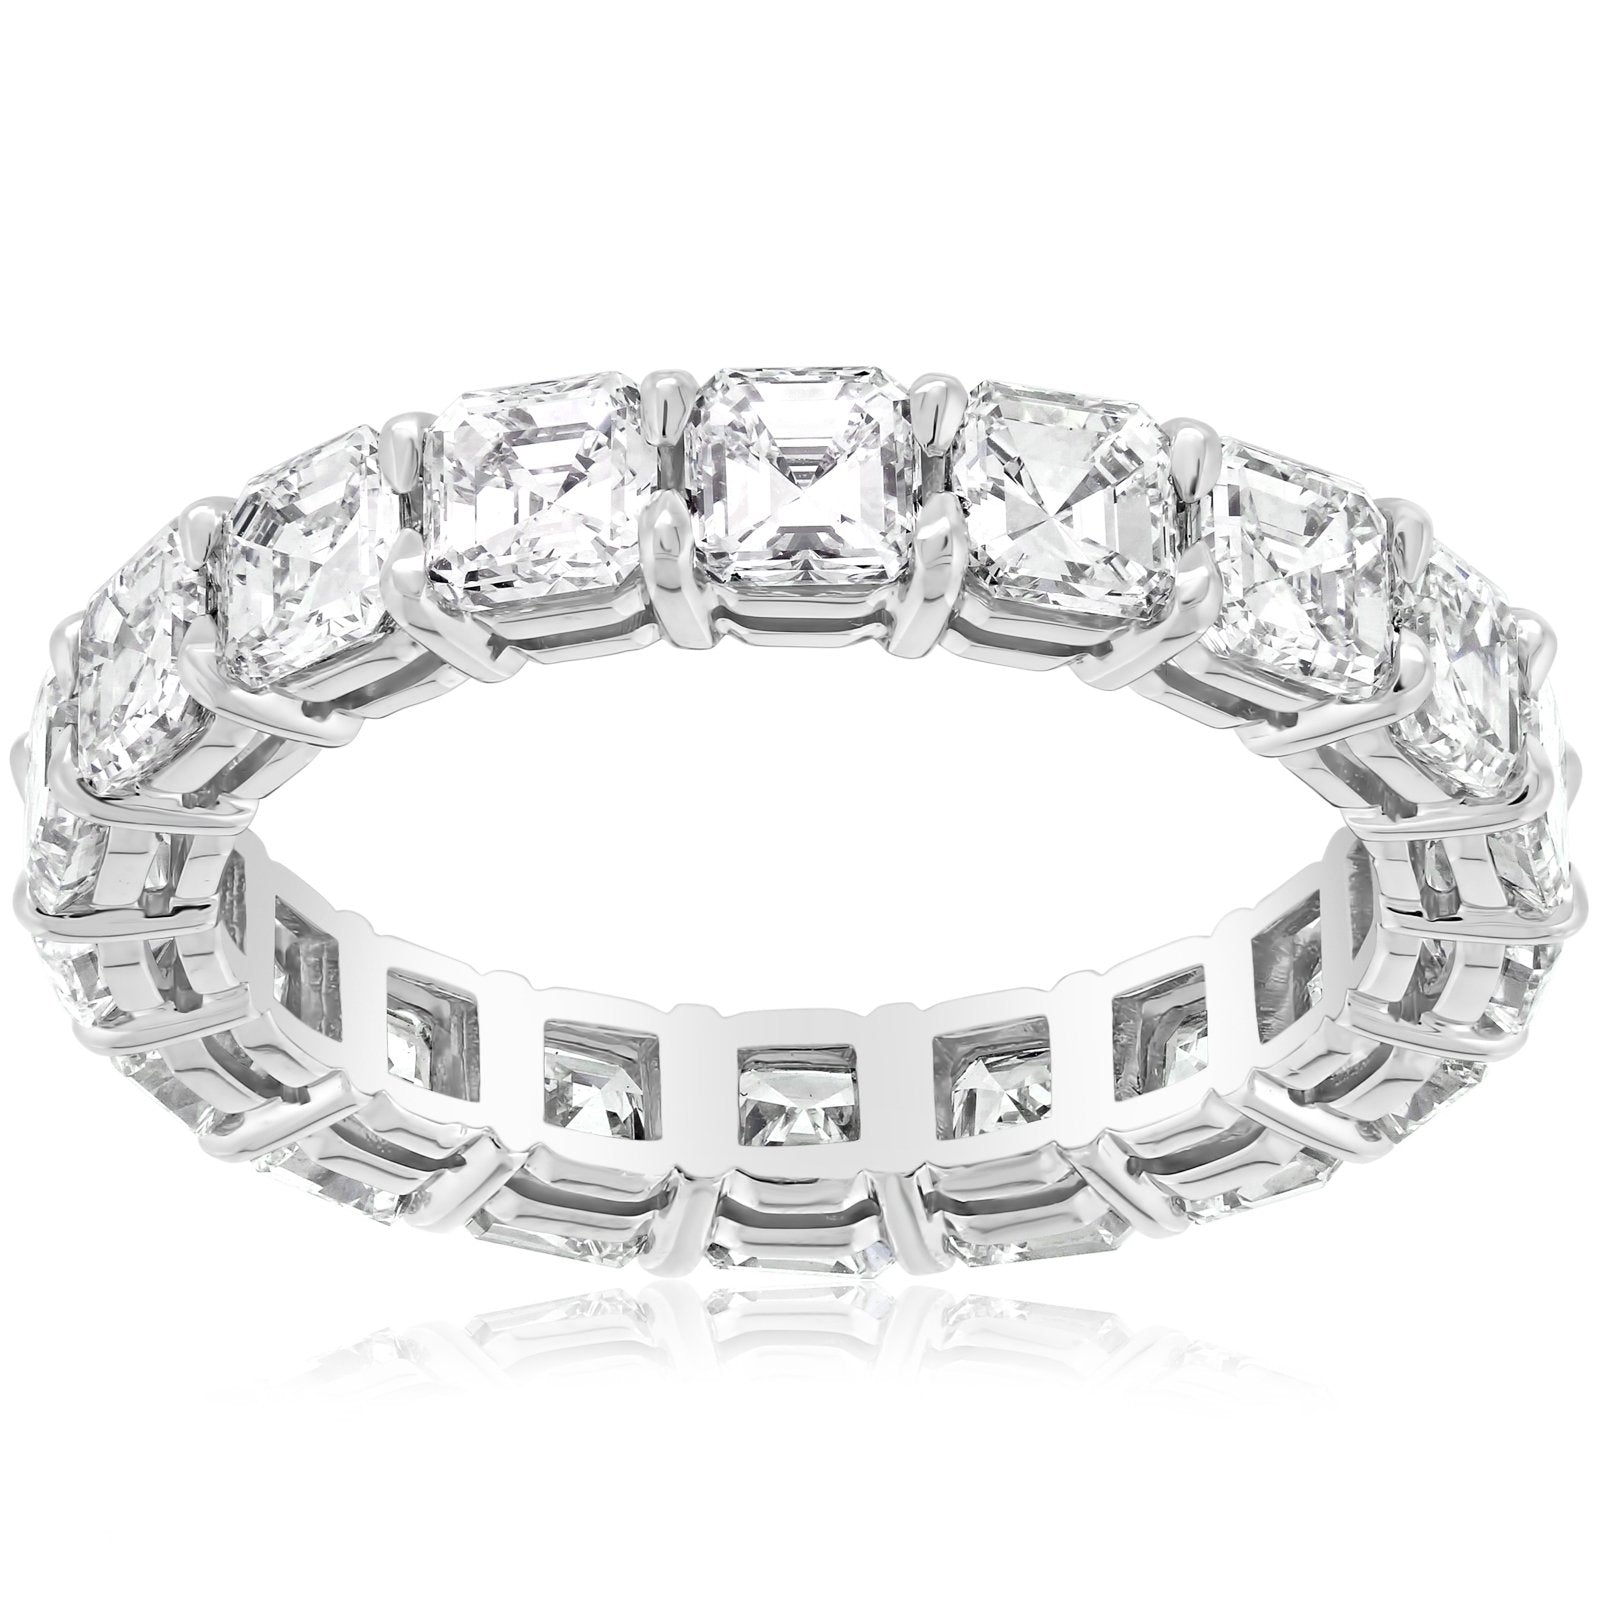 6 Carat Asscher Cut Diamond Eternity Anniversary Ring Size 5.5